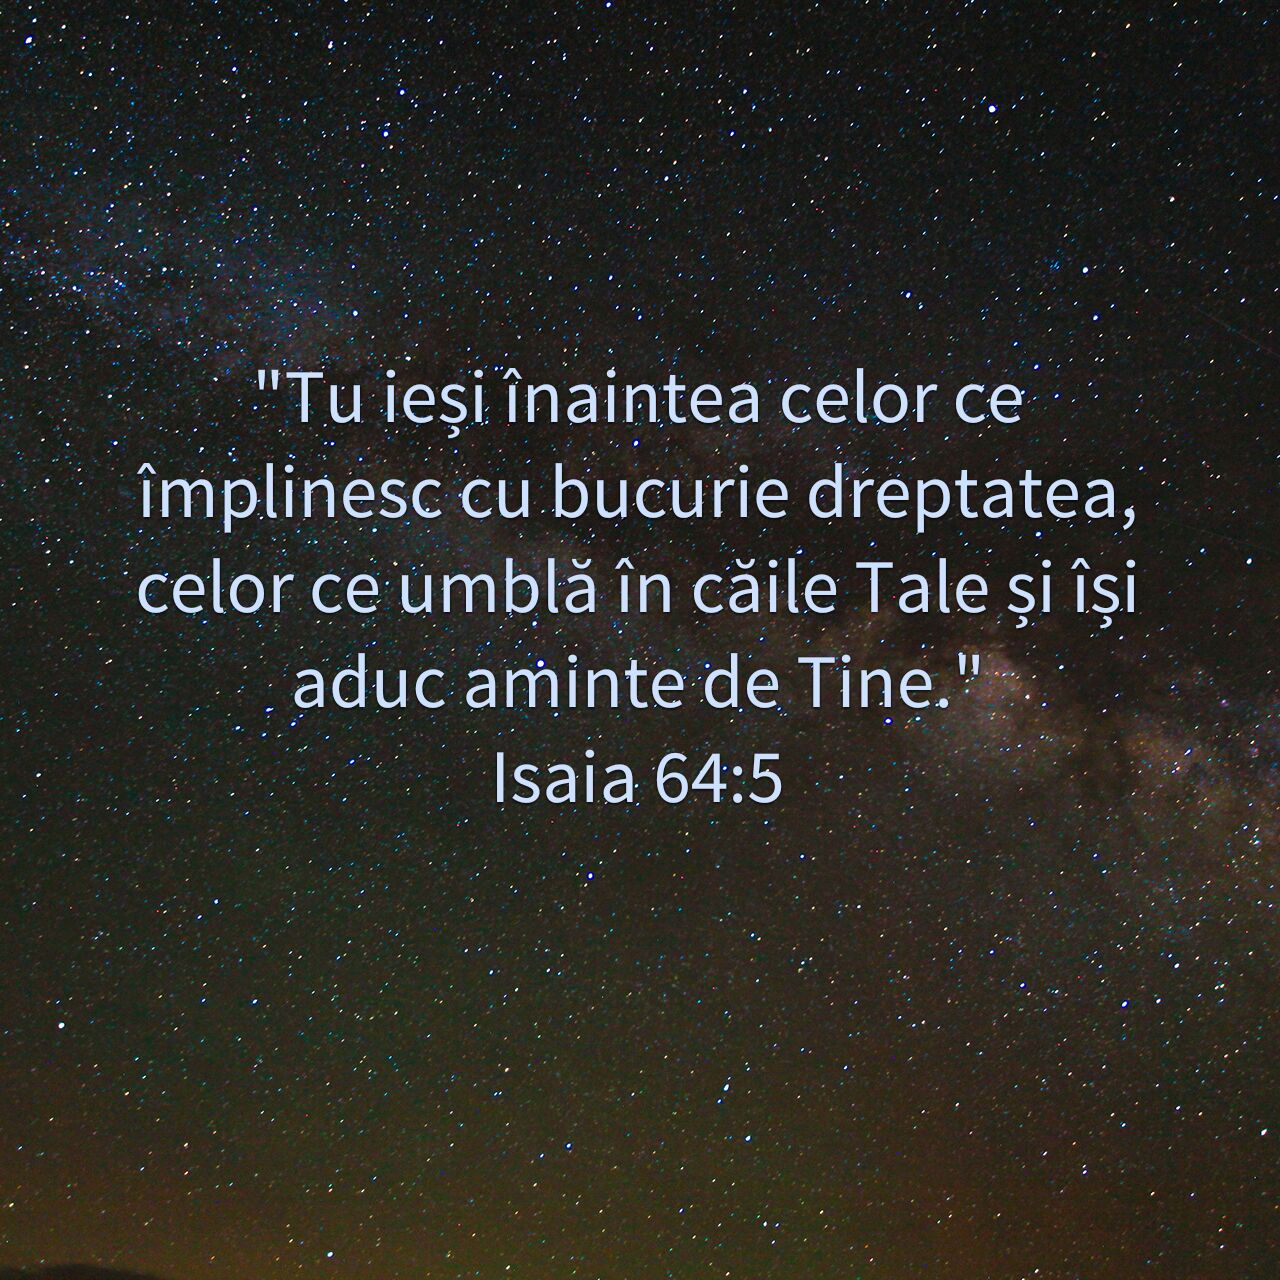 Isaia 64:5